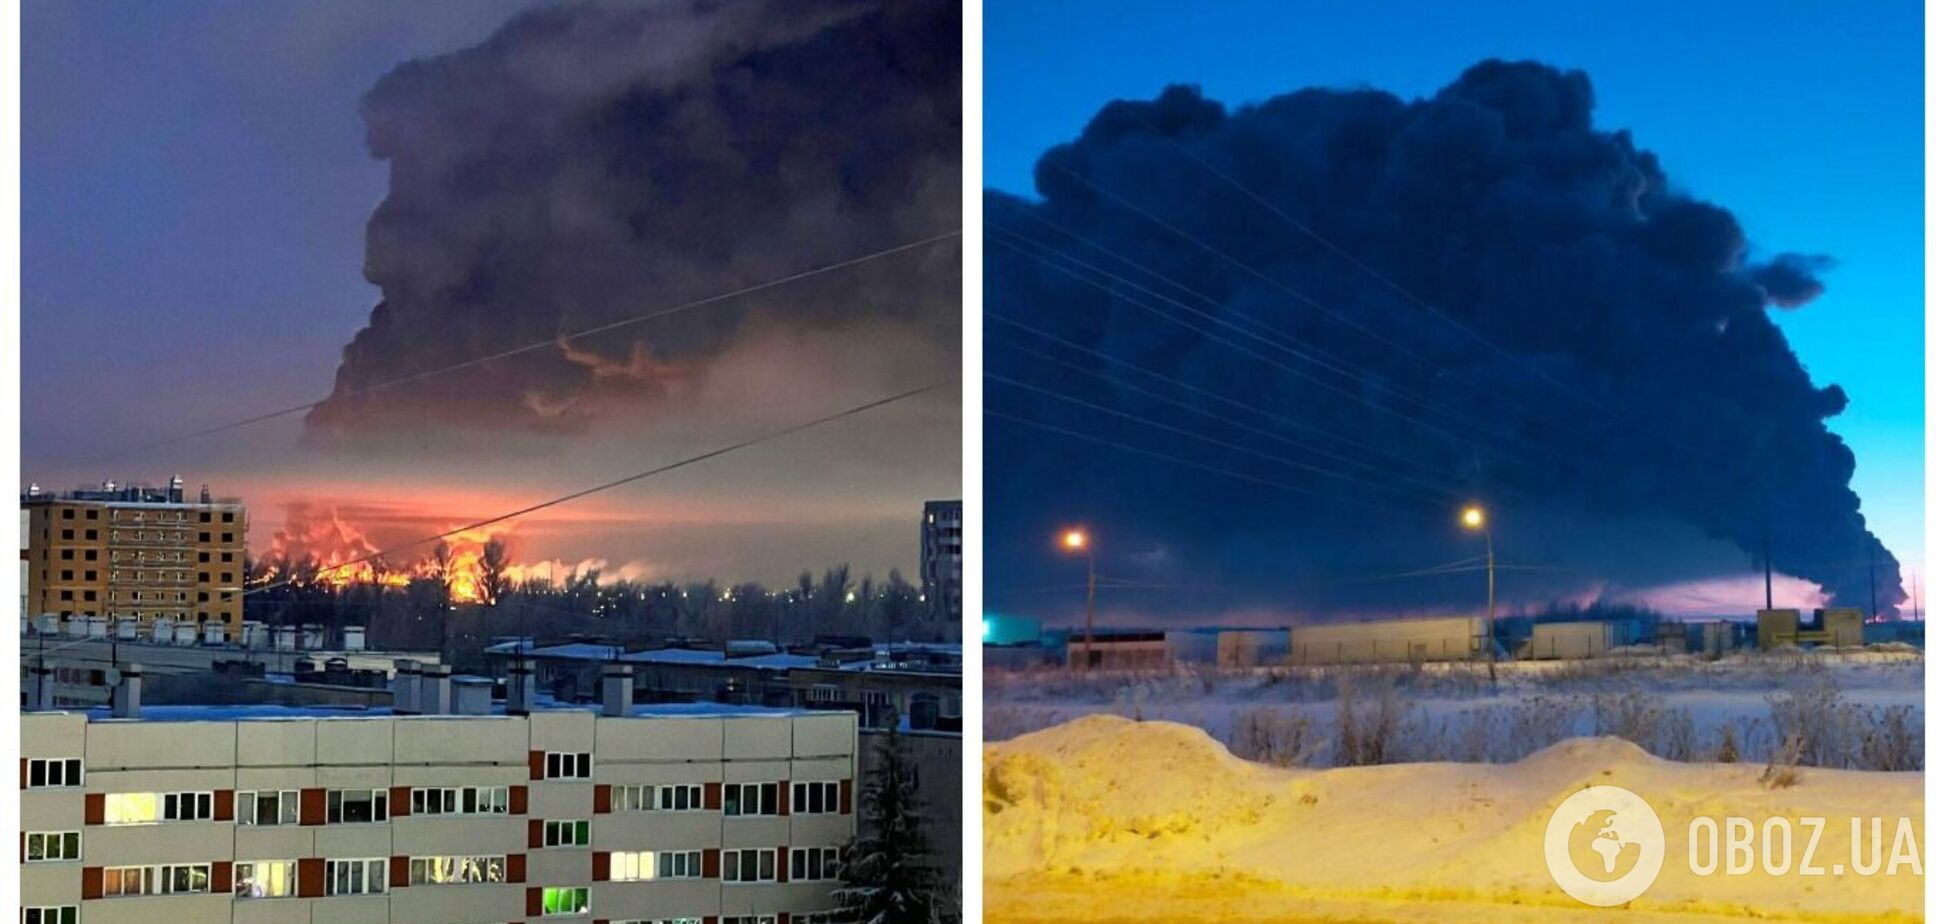 Атаковали Украину, а горит в России! В Санкт-Петербурге вспыхнул гигантский пожар на складах. Эпичные фото и видео